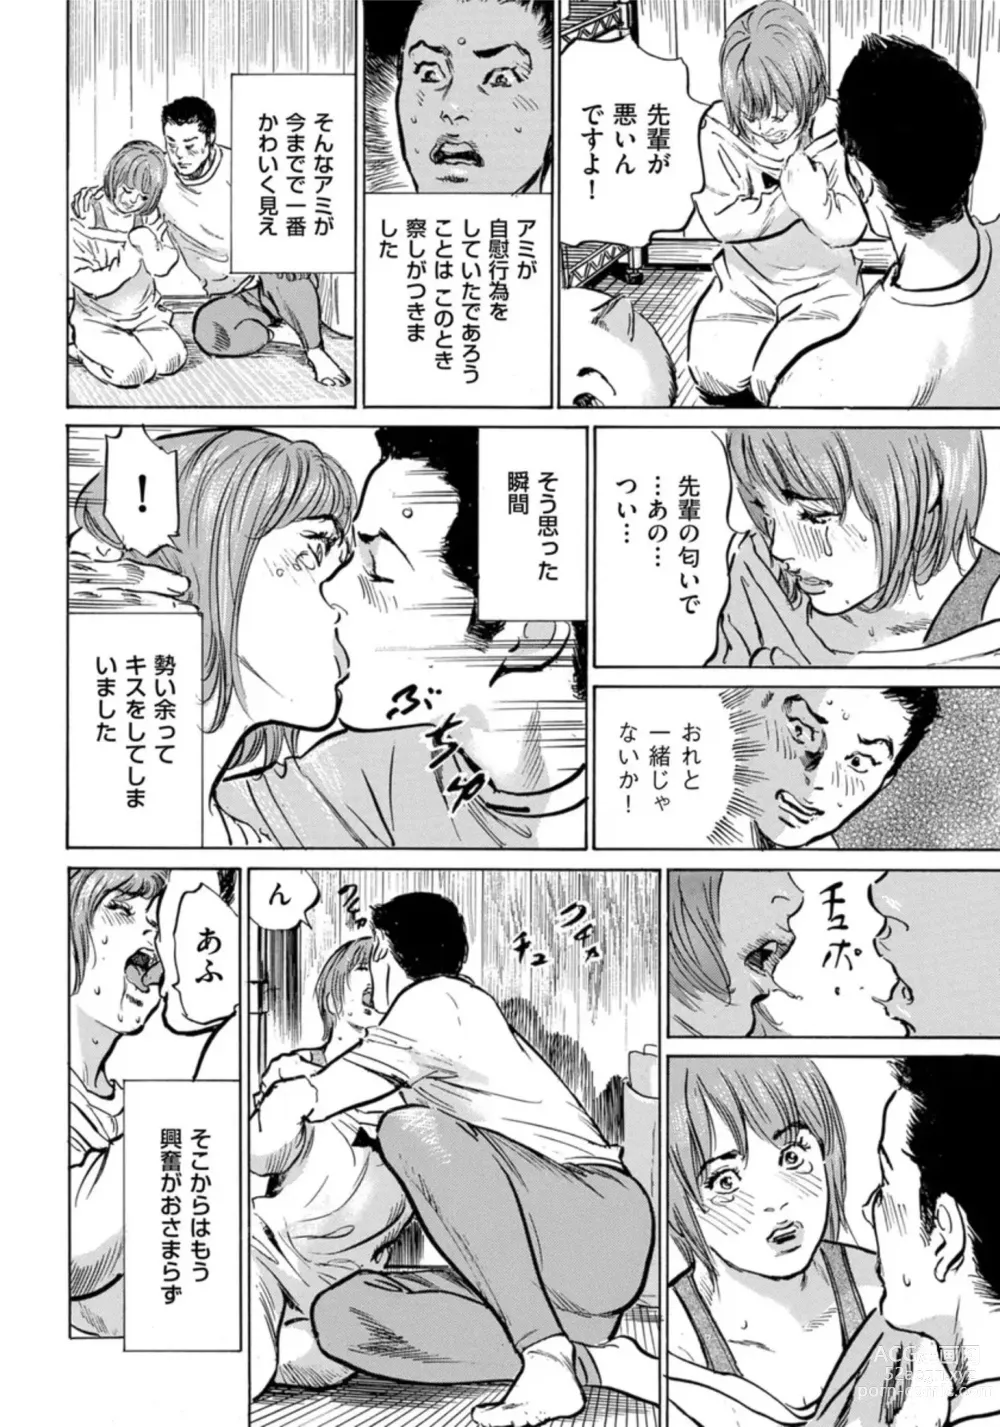 Page 13 of manga Zutto Himitsu ni Shiteita Ano Koto Zenbu Oshiemasu 14 episodes